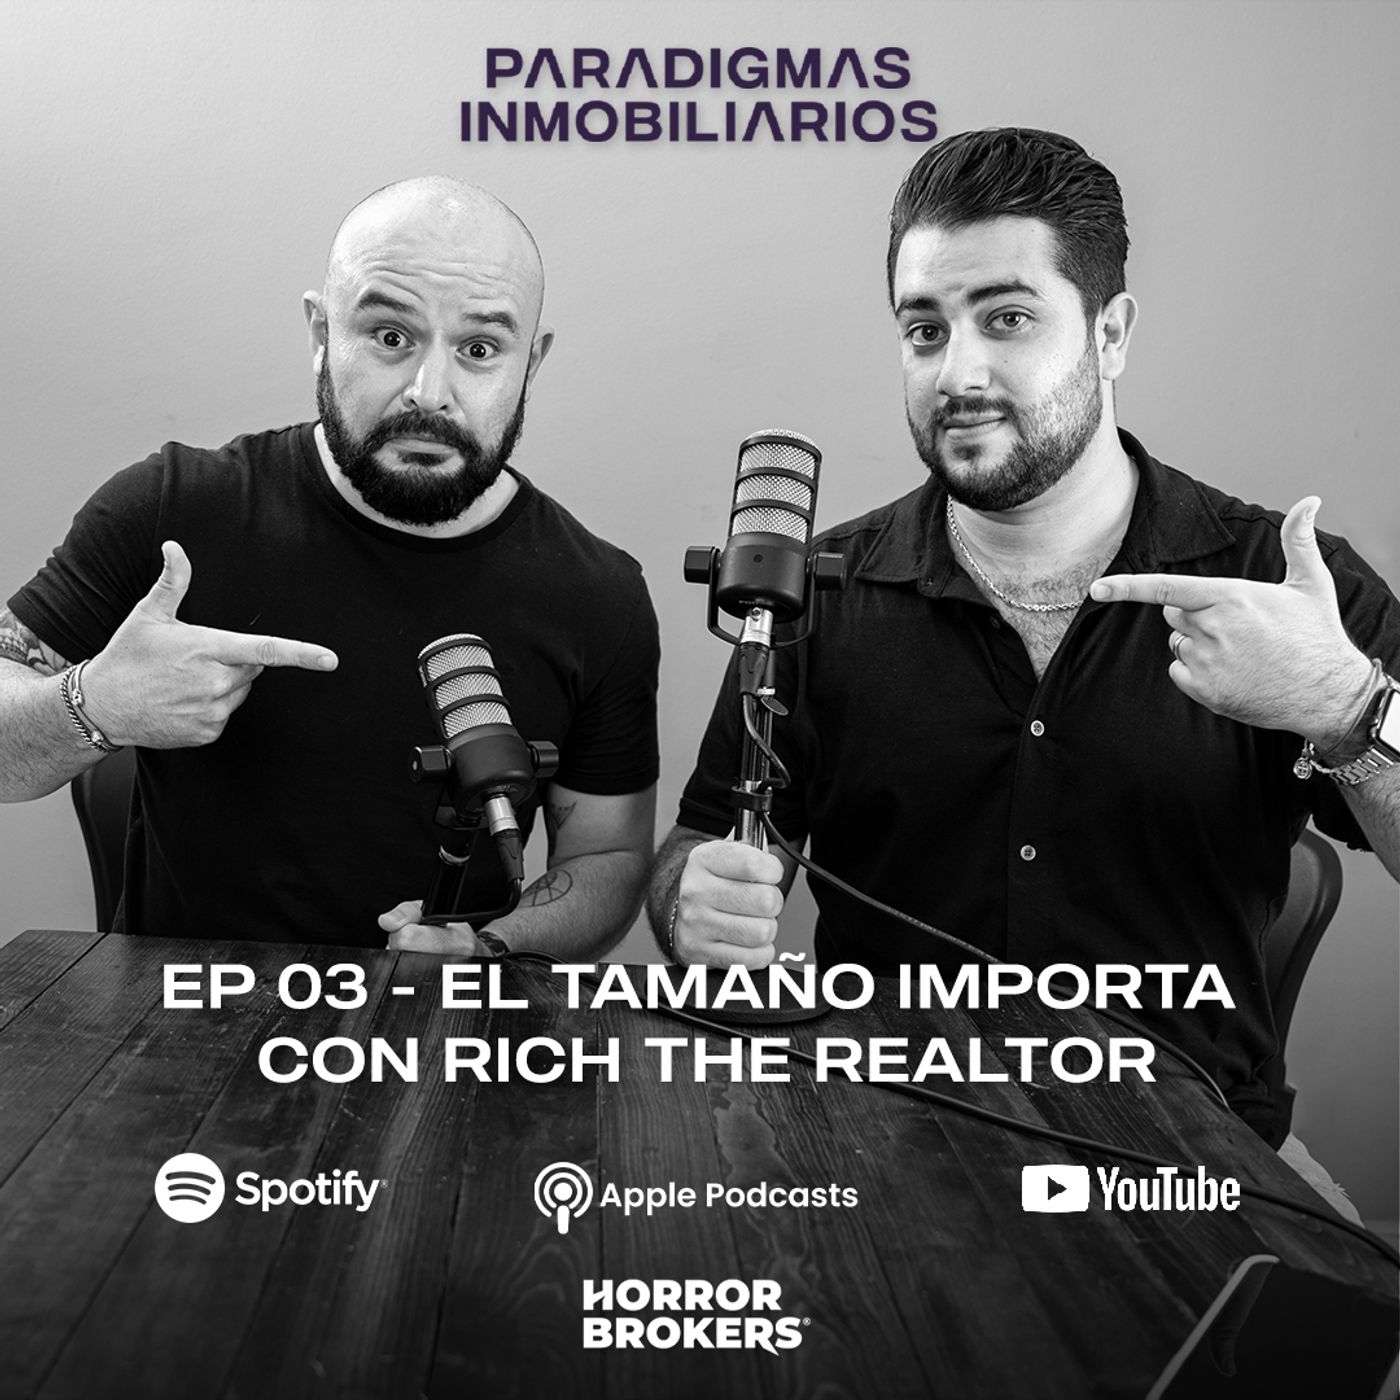 EP 003 - El tamaño importa con Rich the realtor